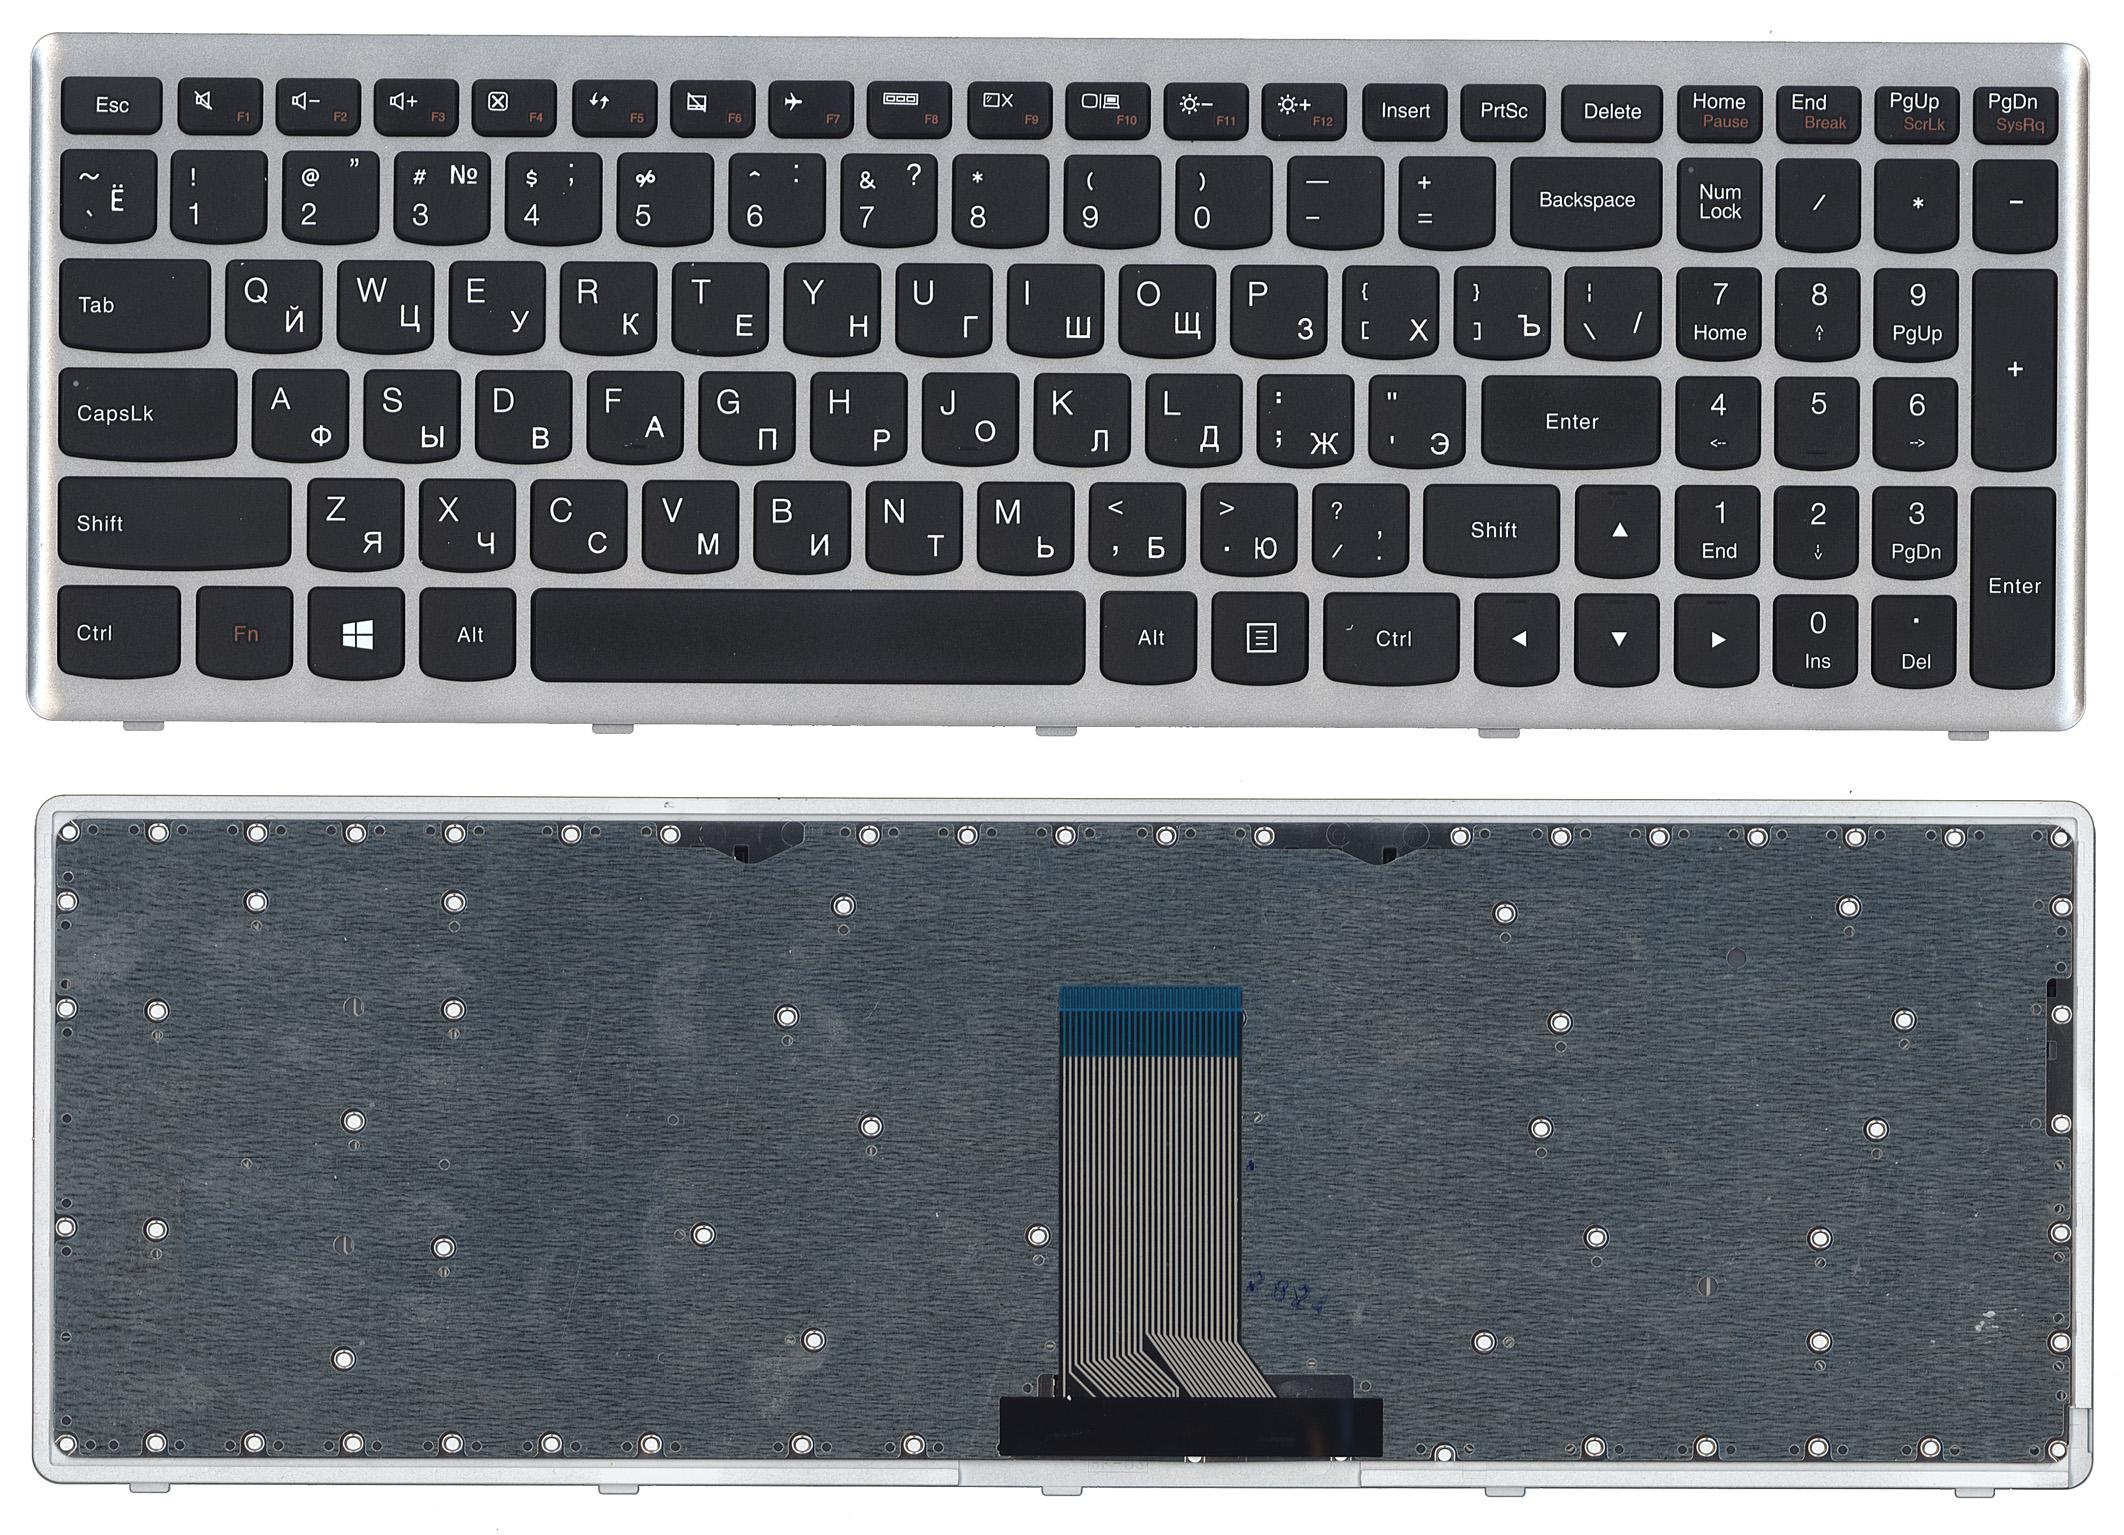 Клавиатура для ноутбука Lenovo IdeaPad U510 Z710 черная с серебристой рамкой